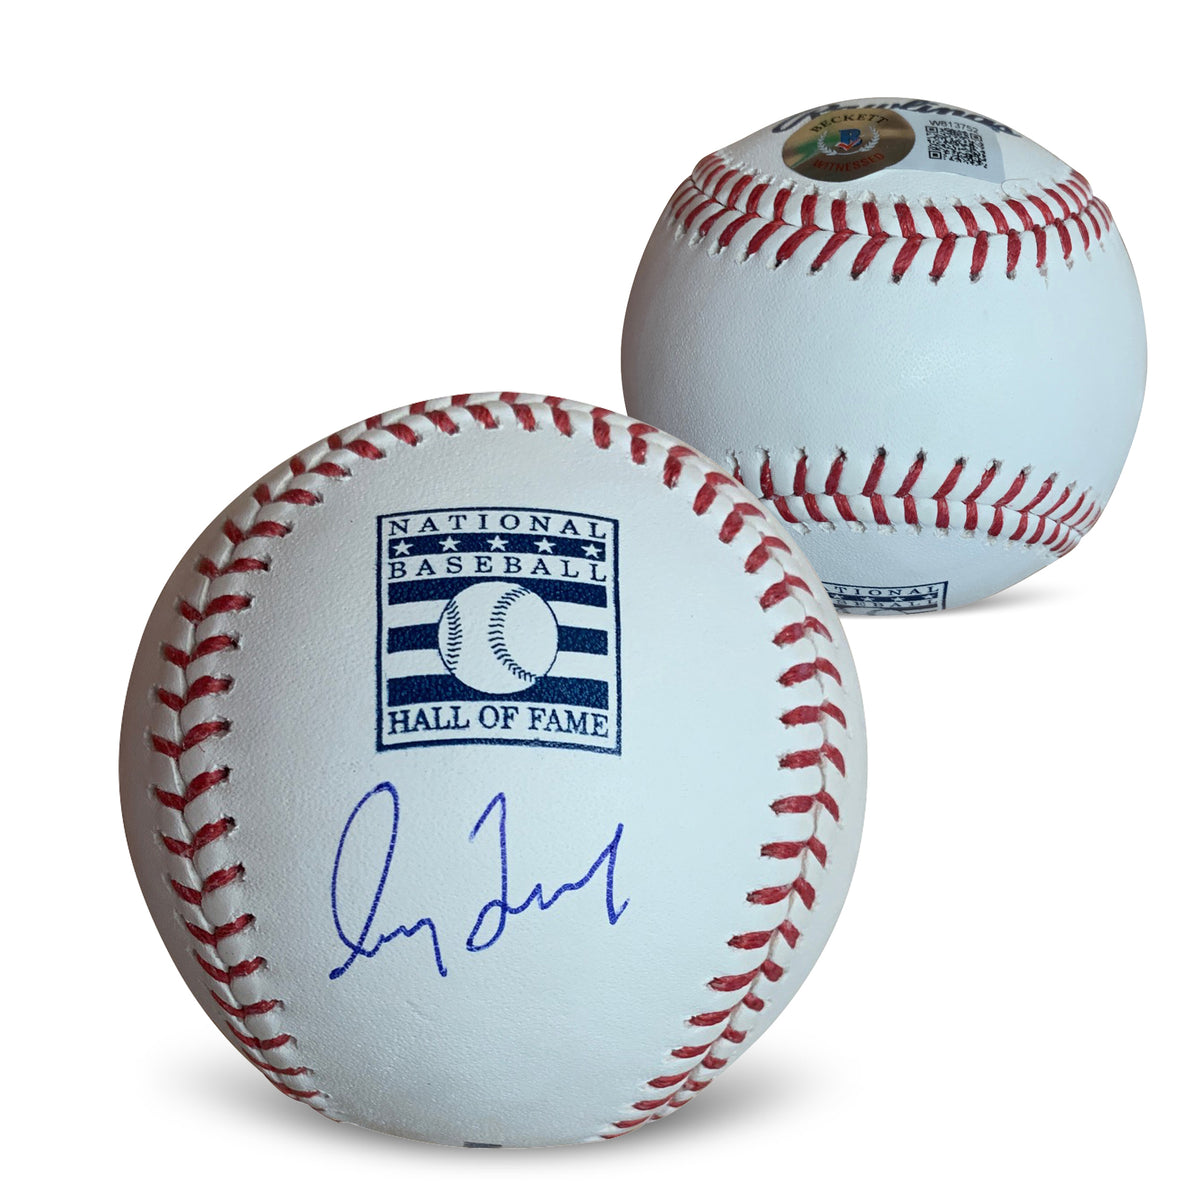 Greg Maddux Signed 2021 World Series Baseball (JSA)